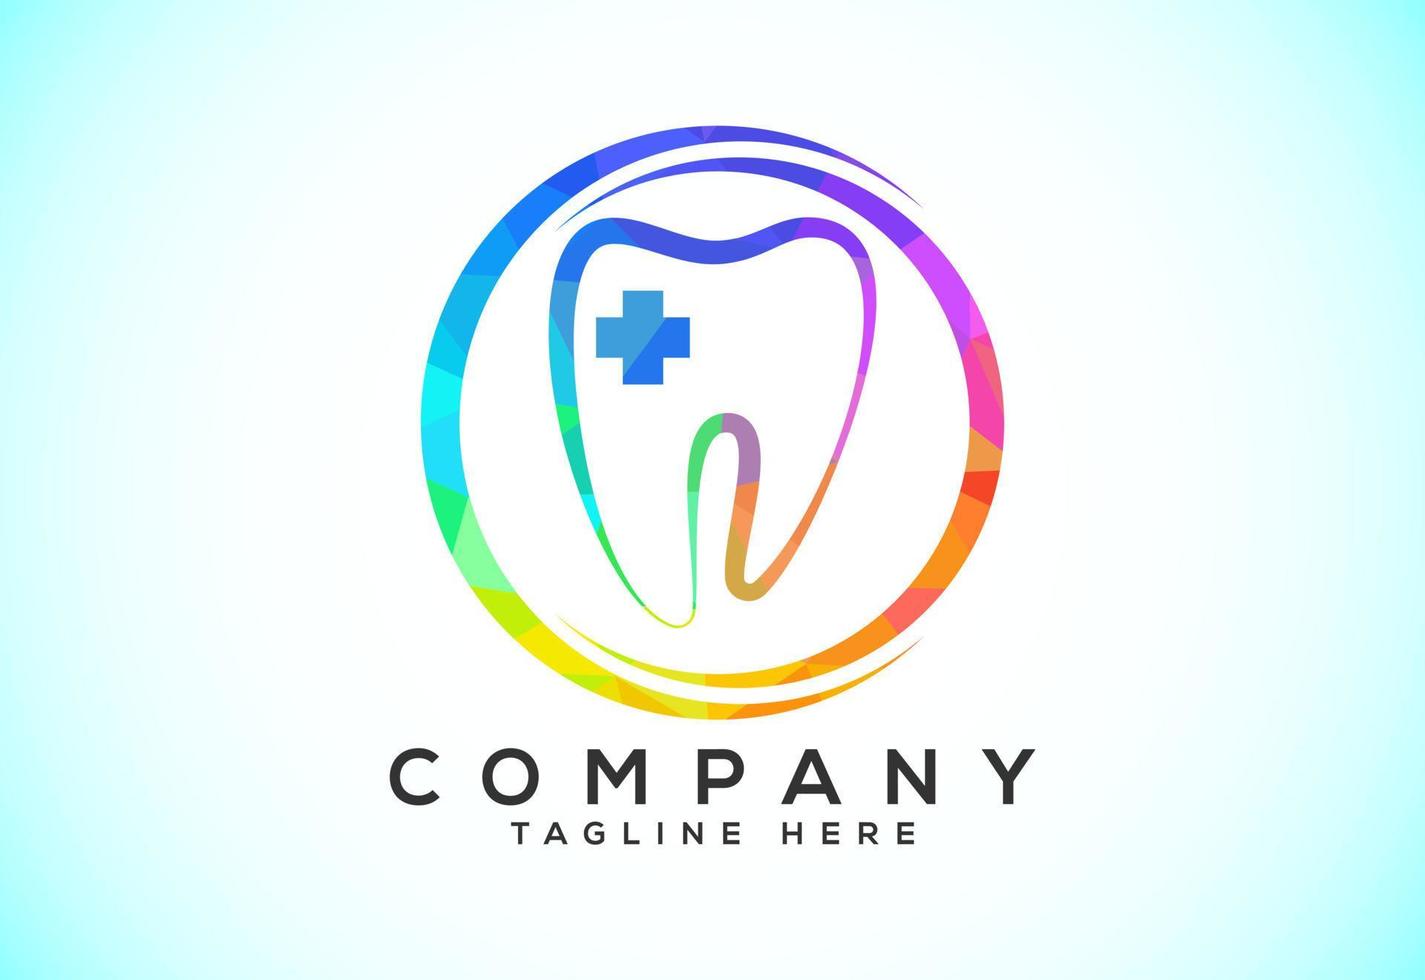 poligonale dente dentale logo. Basso poli stile dentale clinica logo vettore illustrazione.